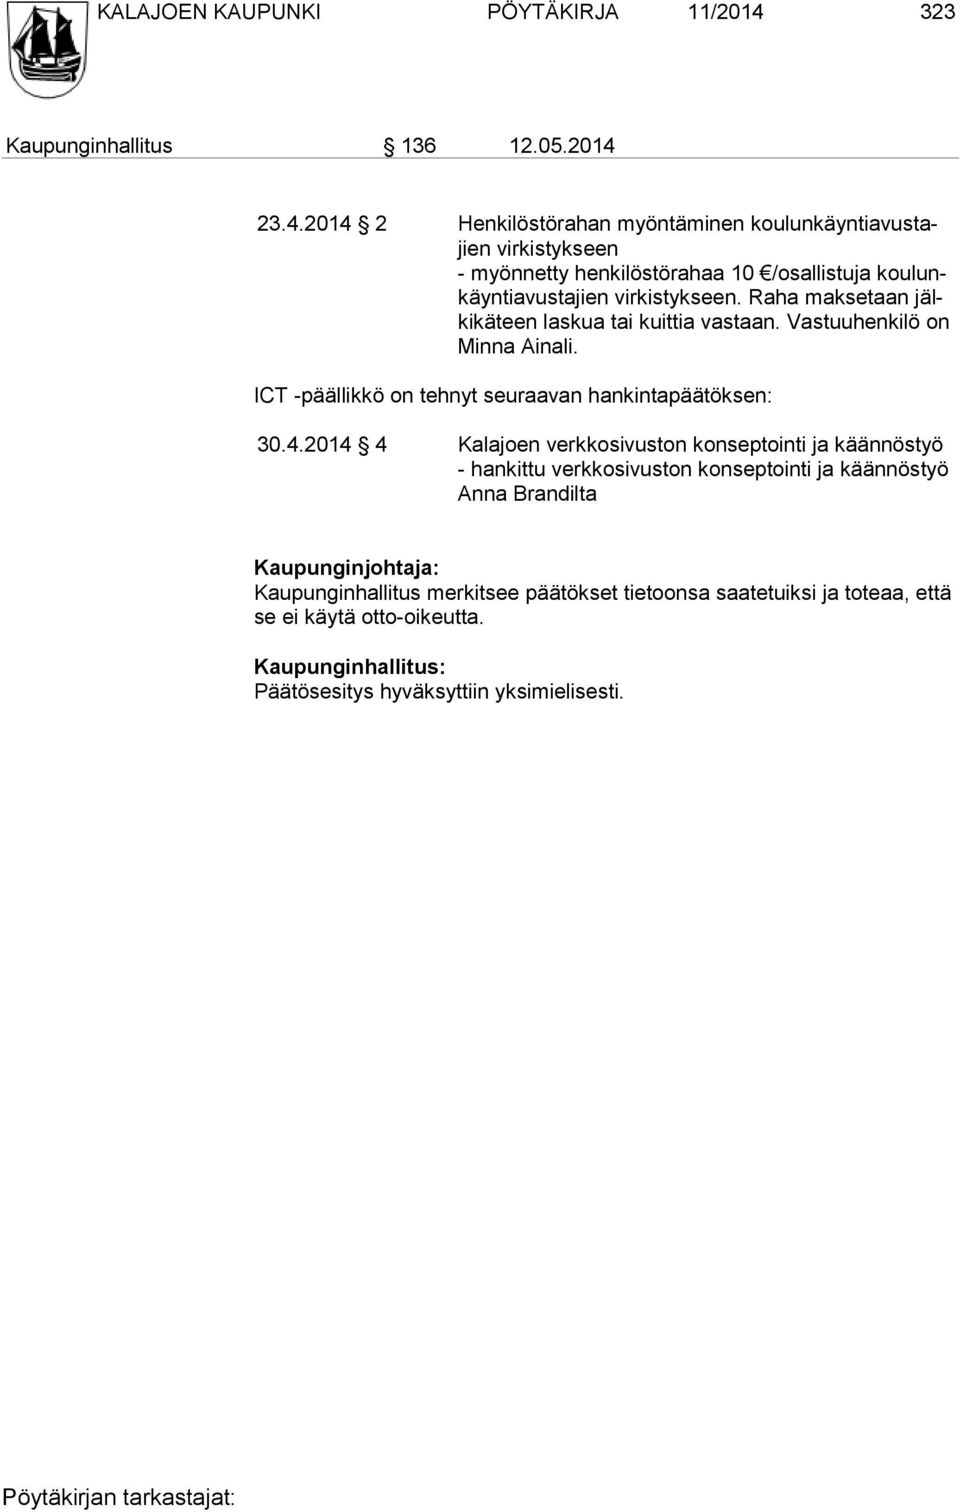 23.4.2014 2 Henkilöstörahan myöntäminen koulunkäyntiavustajien virkistykseen - myönnetty henkilöstörahaa 10 /osallistuja koulunkäyntiavustajien virkistykseen.